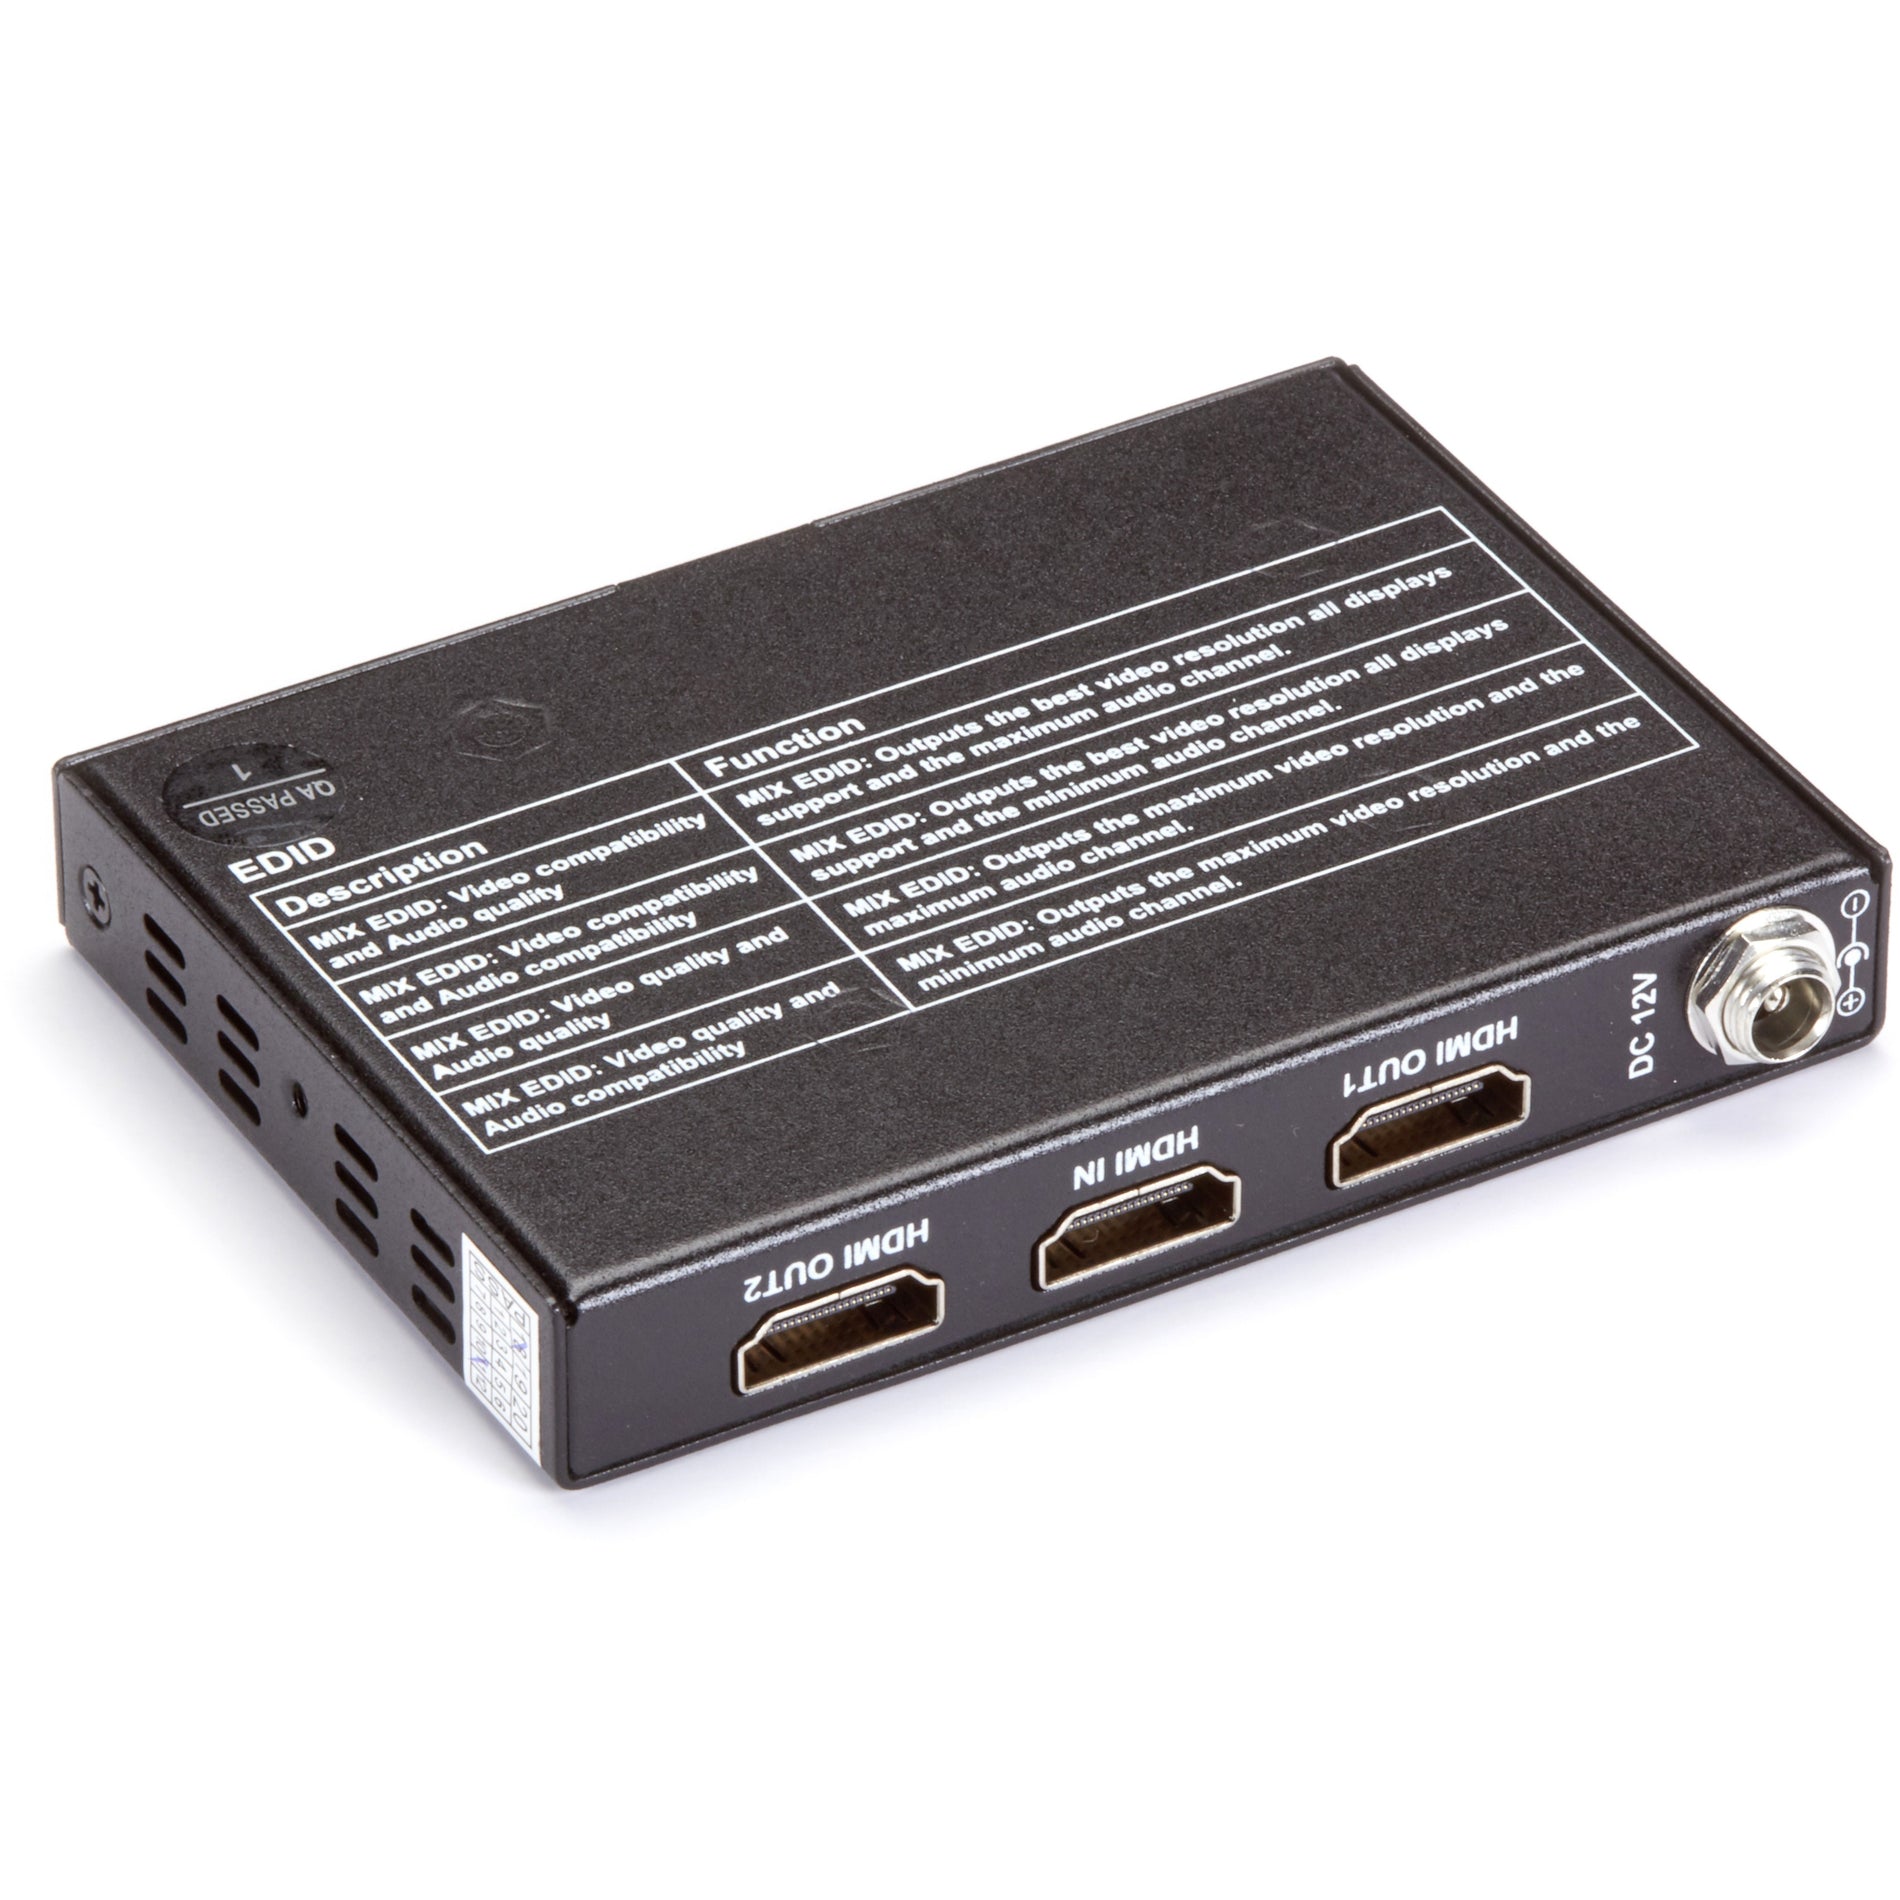 Black Box VSP-HDMI2-1X2 HDMI 2.0 4K60 Splitter - 1x2, Maximum Video Resolution 4096 x 2160, 3 Year Warranty